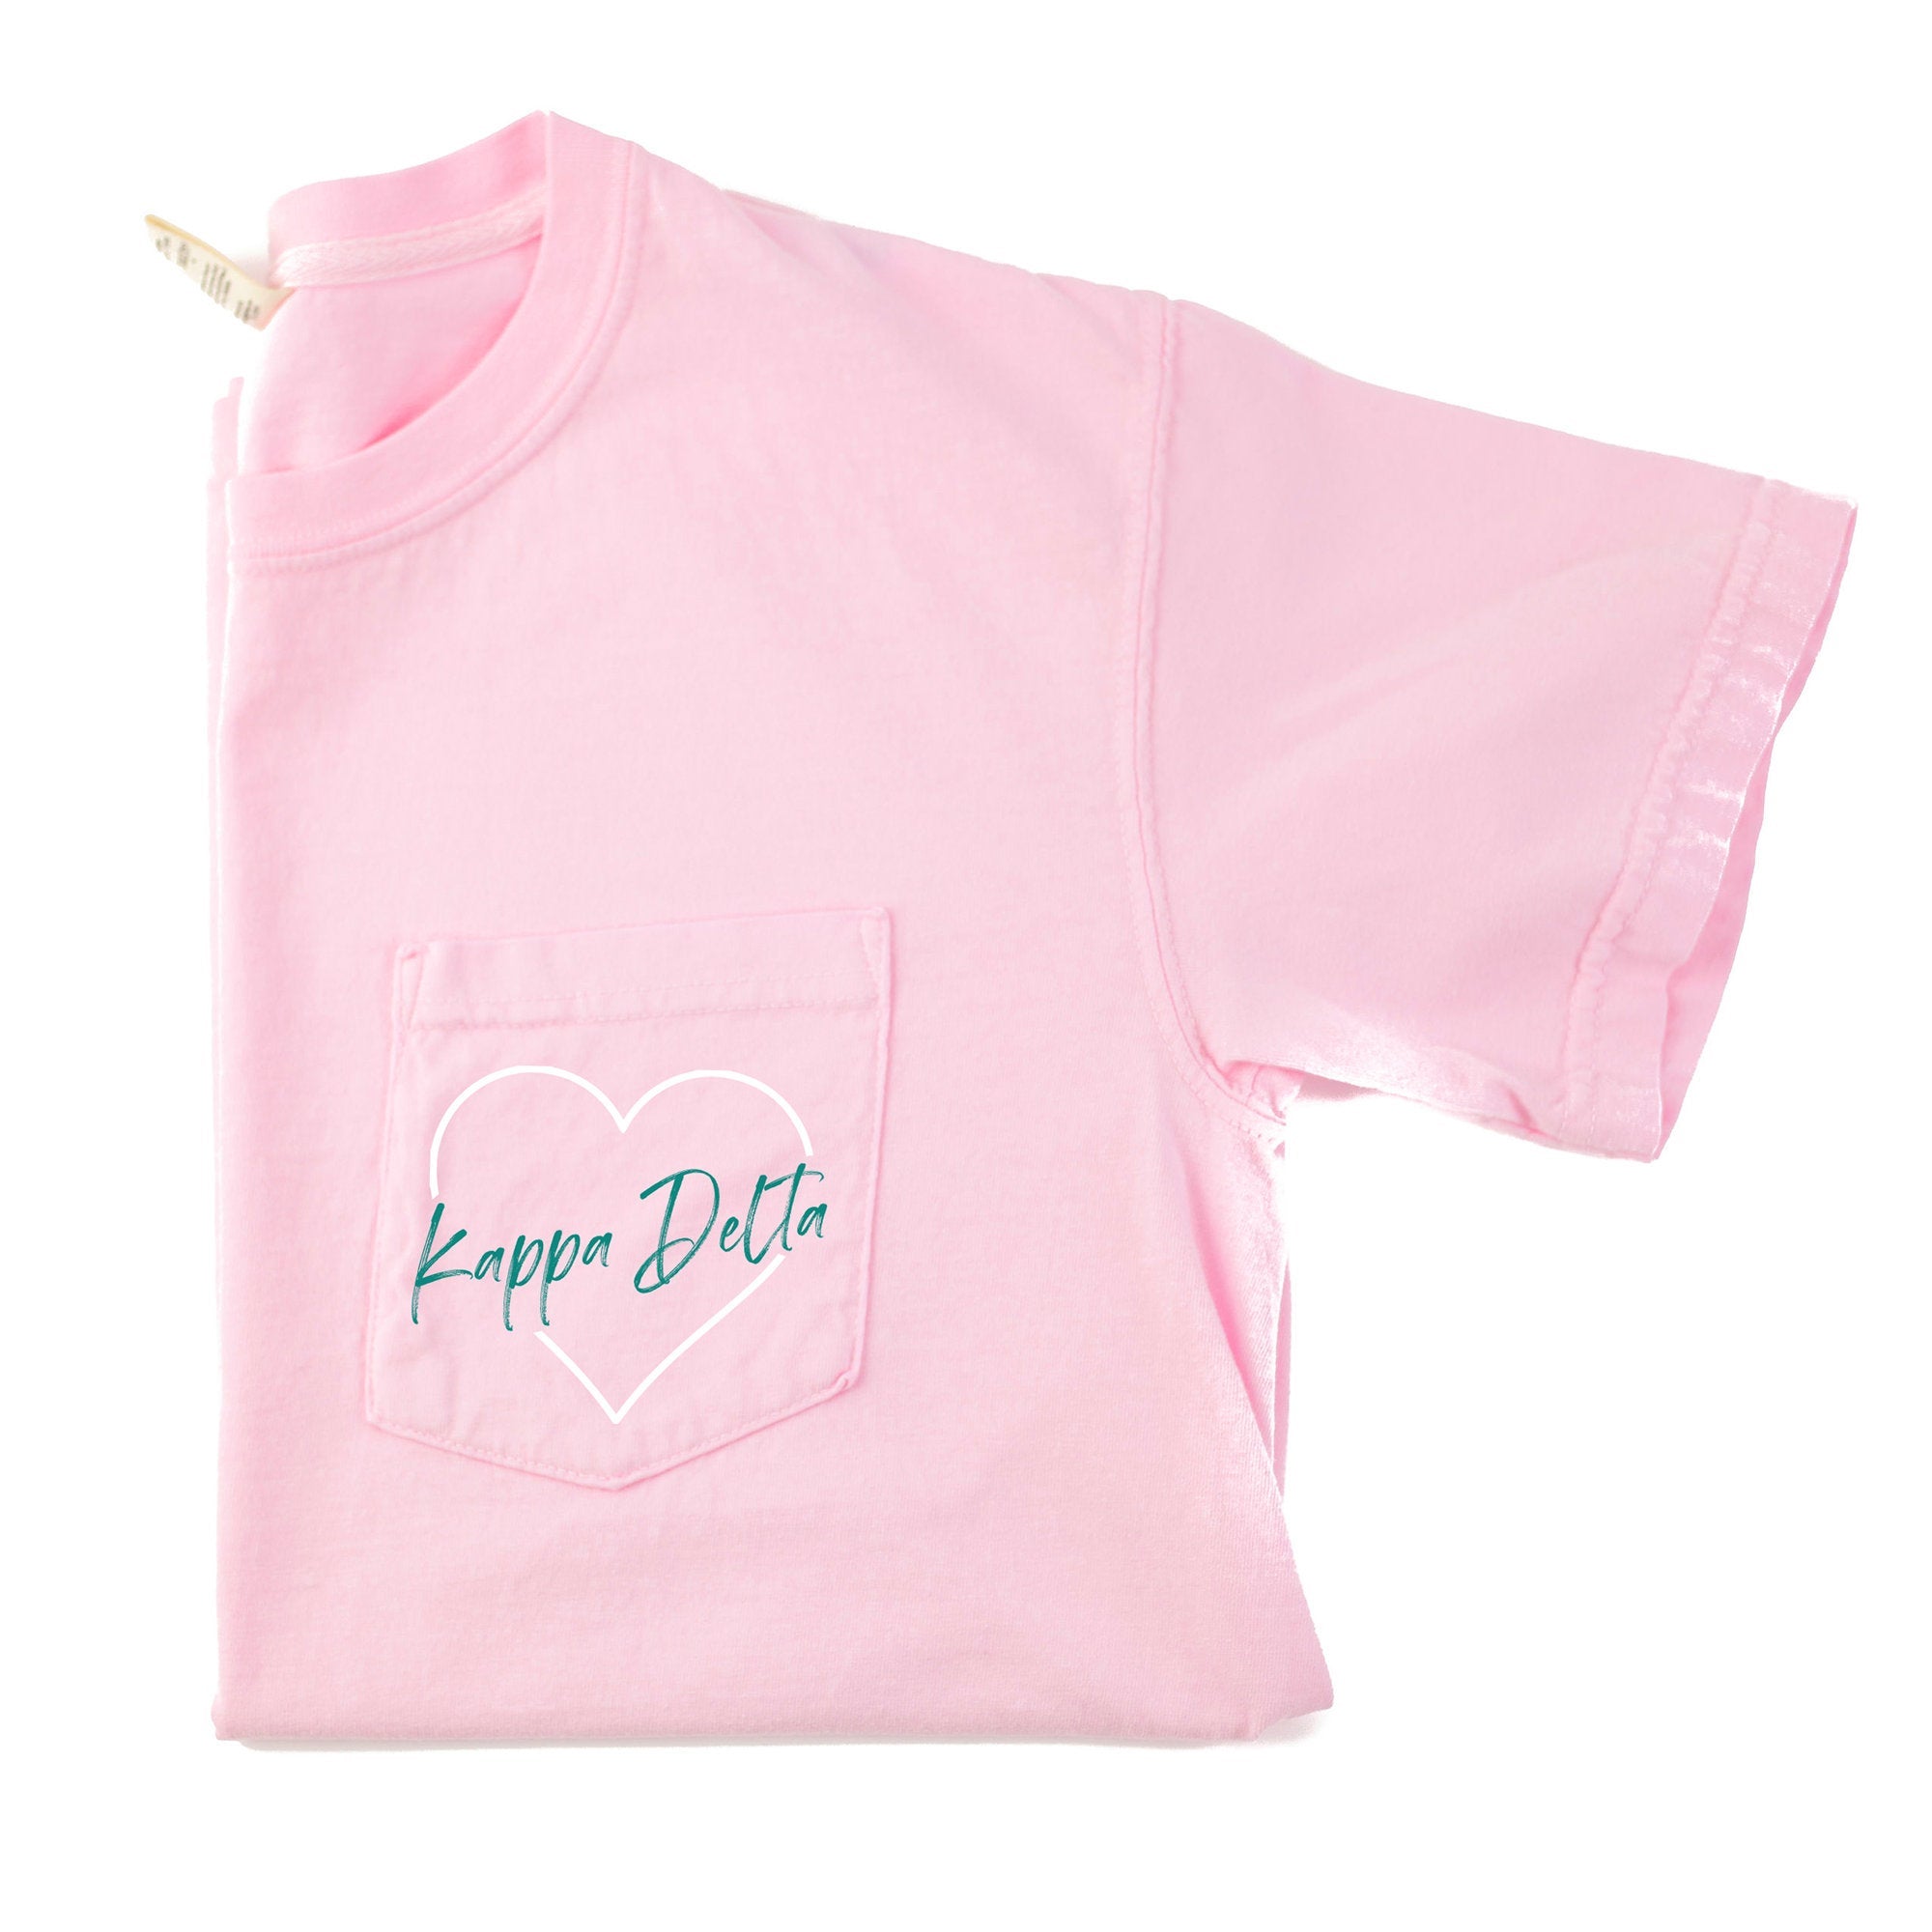 Kappa Delta Heart Pocket T-Shirt - Blossom - Go Greek Chic